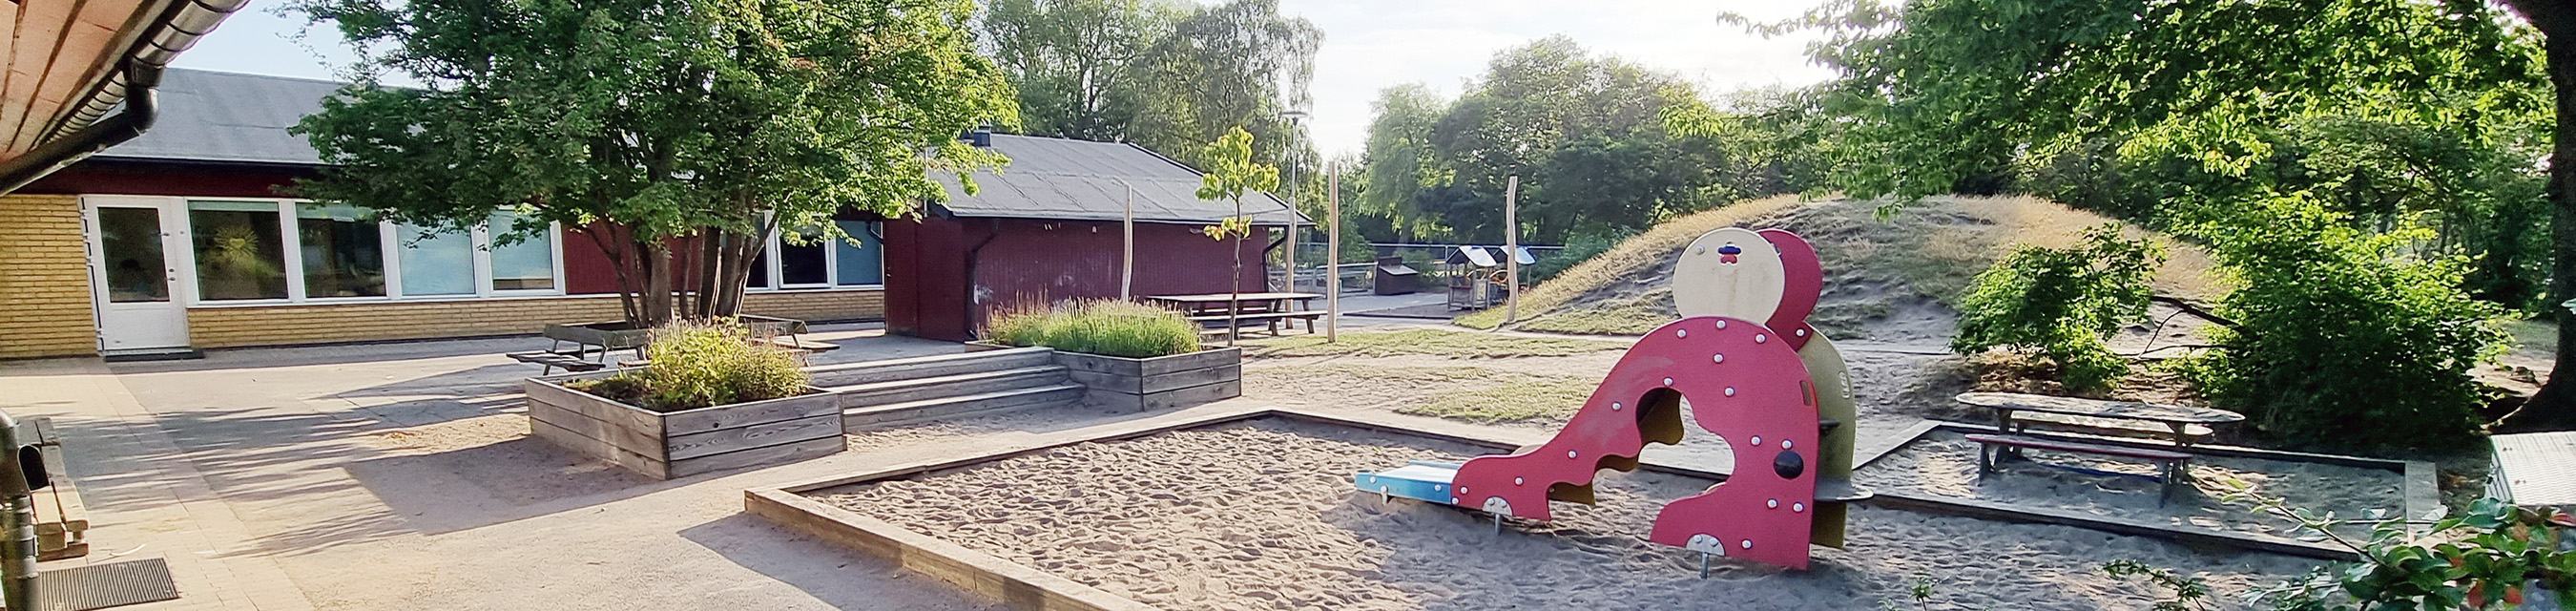 Knäbäcks förskola har tre avdelningar och en stor gård som bjuder på möjligheter till
fantasi, lek och utforskande.